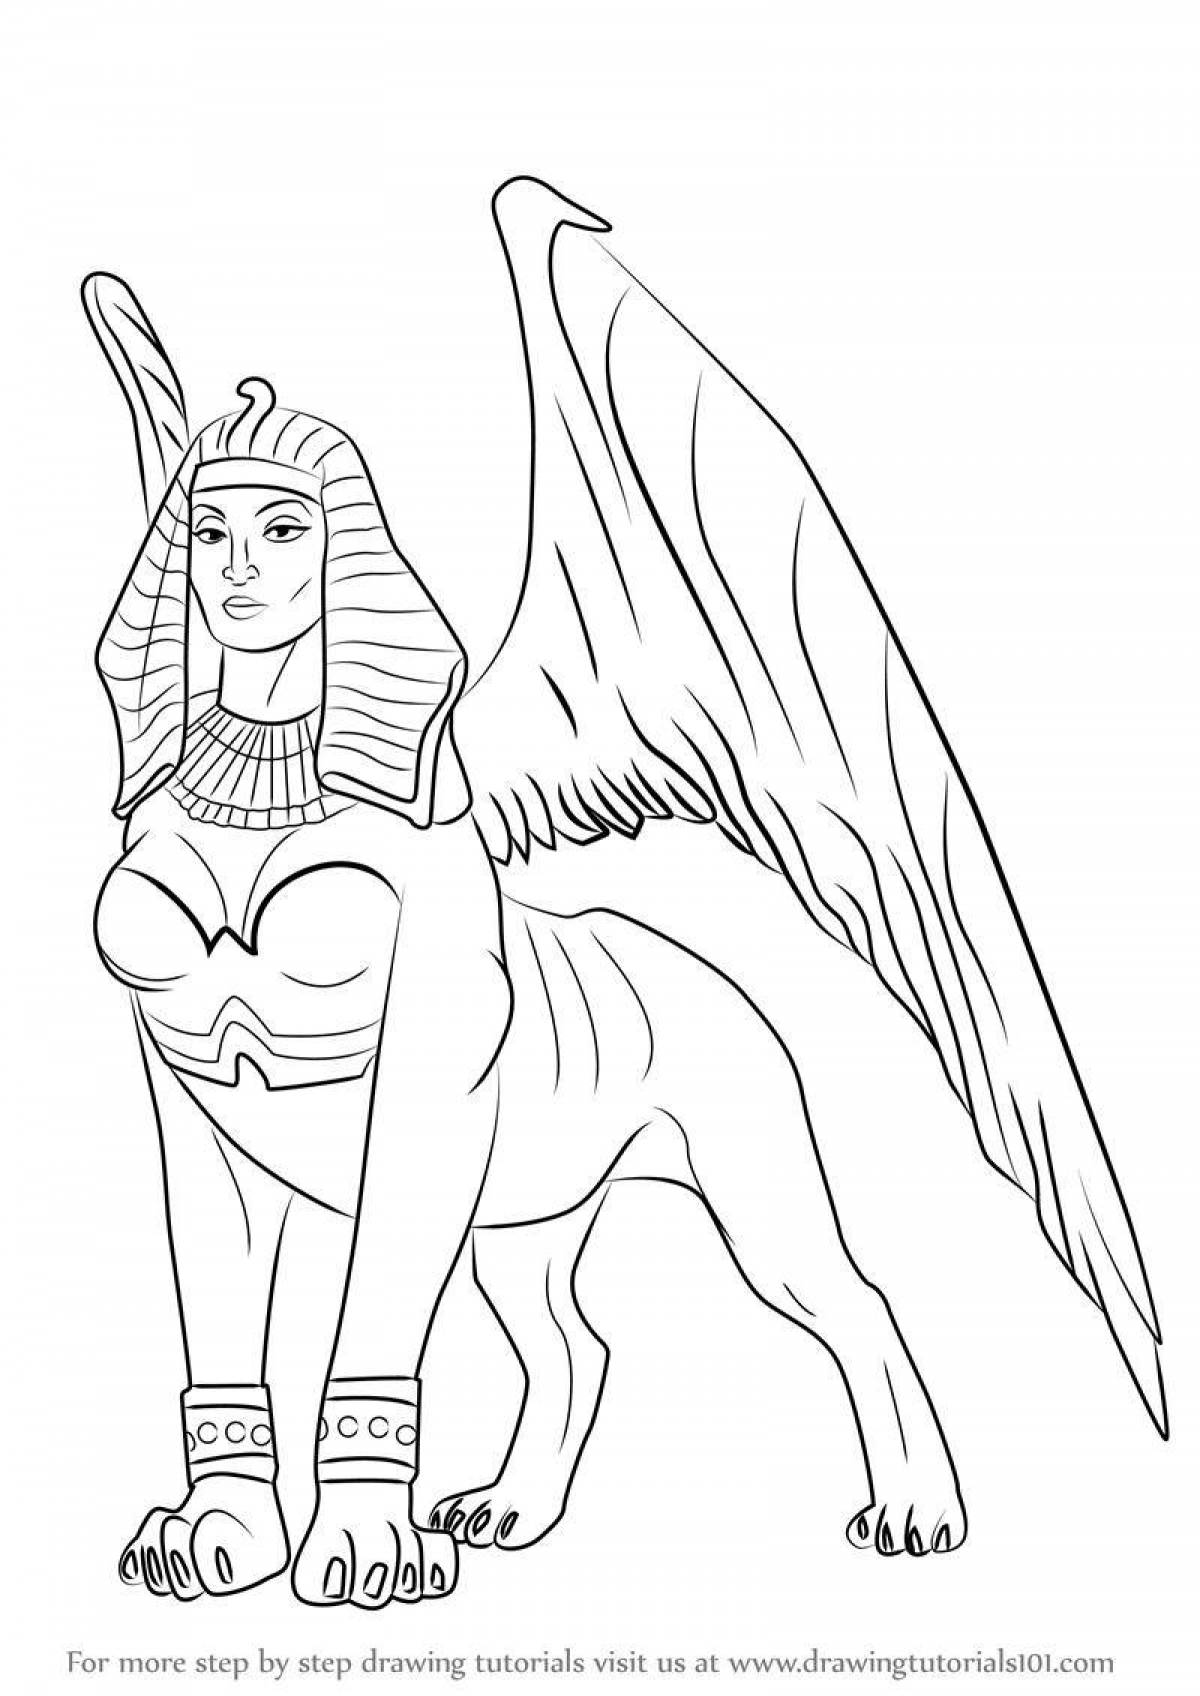 Brilliant sphinx egypt coloring book